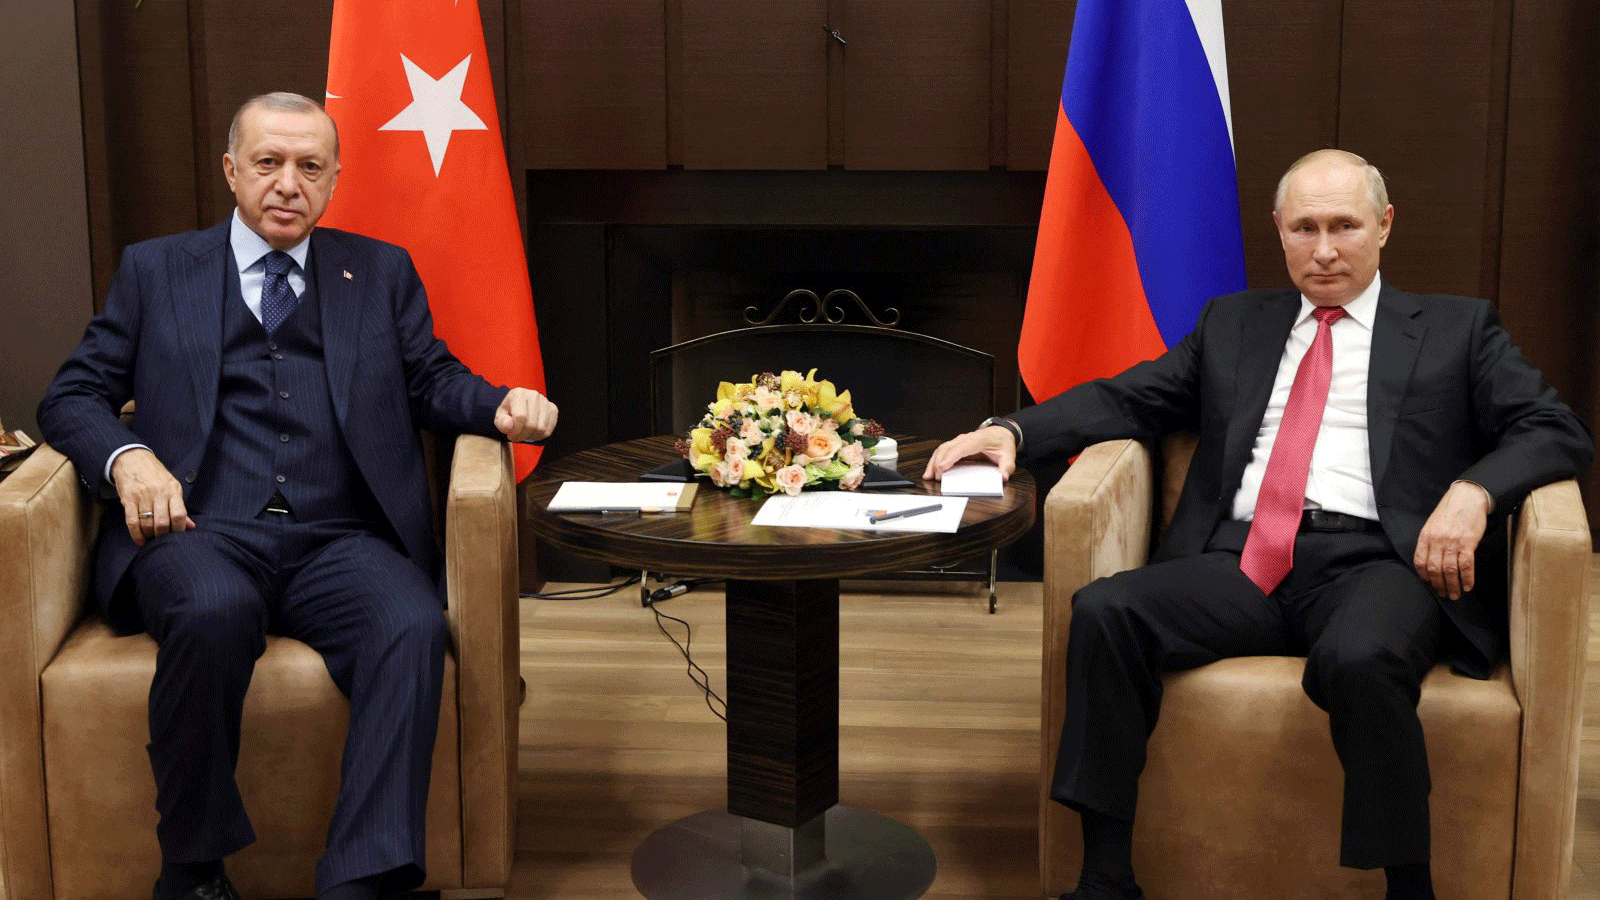 الرئيس التركي رجب طيب أردوغان (إلى اليسار) والرئيس الروسي فلاديمير بوتين في لقطة قبيل اجتماعهما في سوتشي، روسيا. 29 أيلول/ سبتمبر 2021.